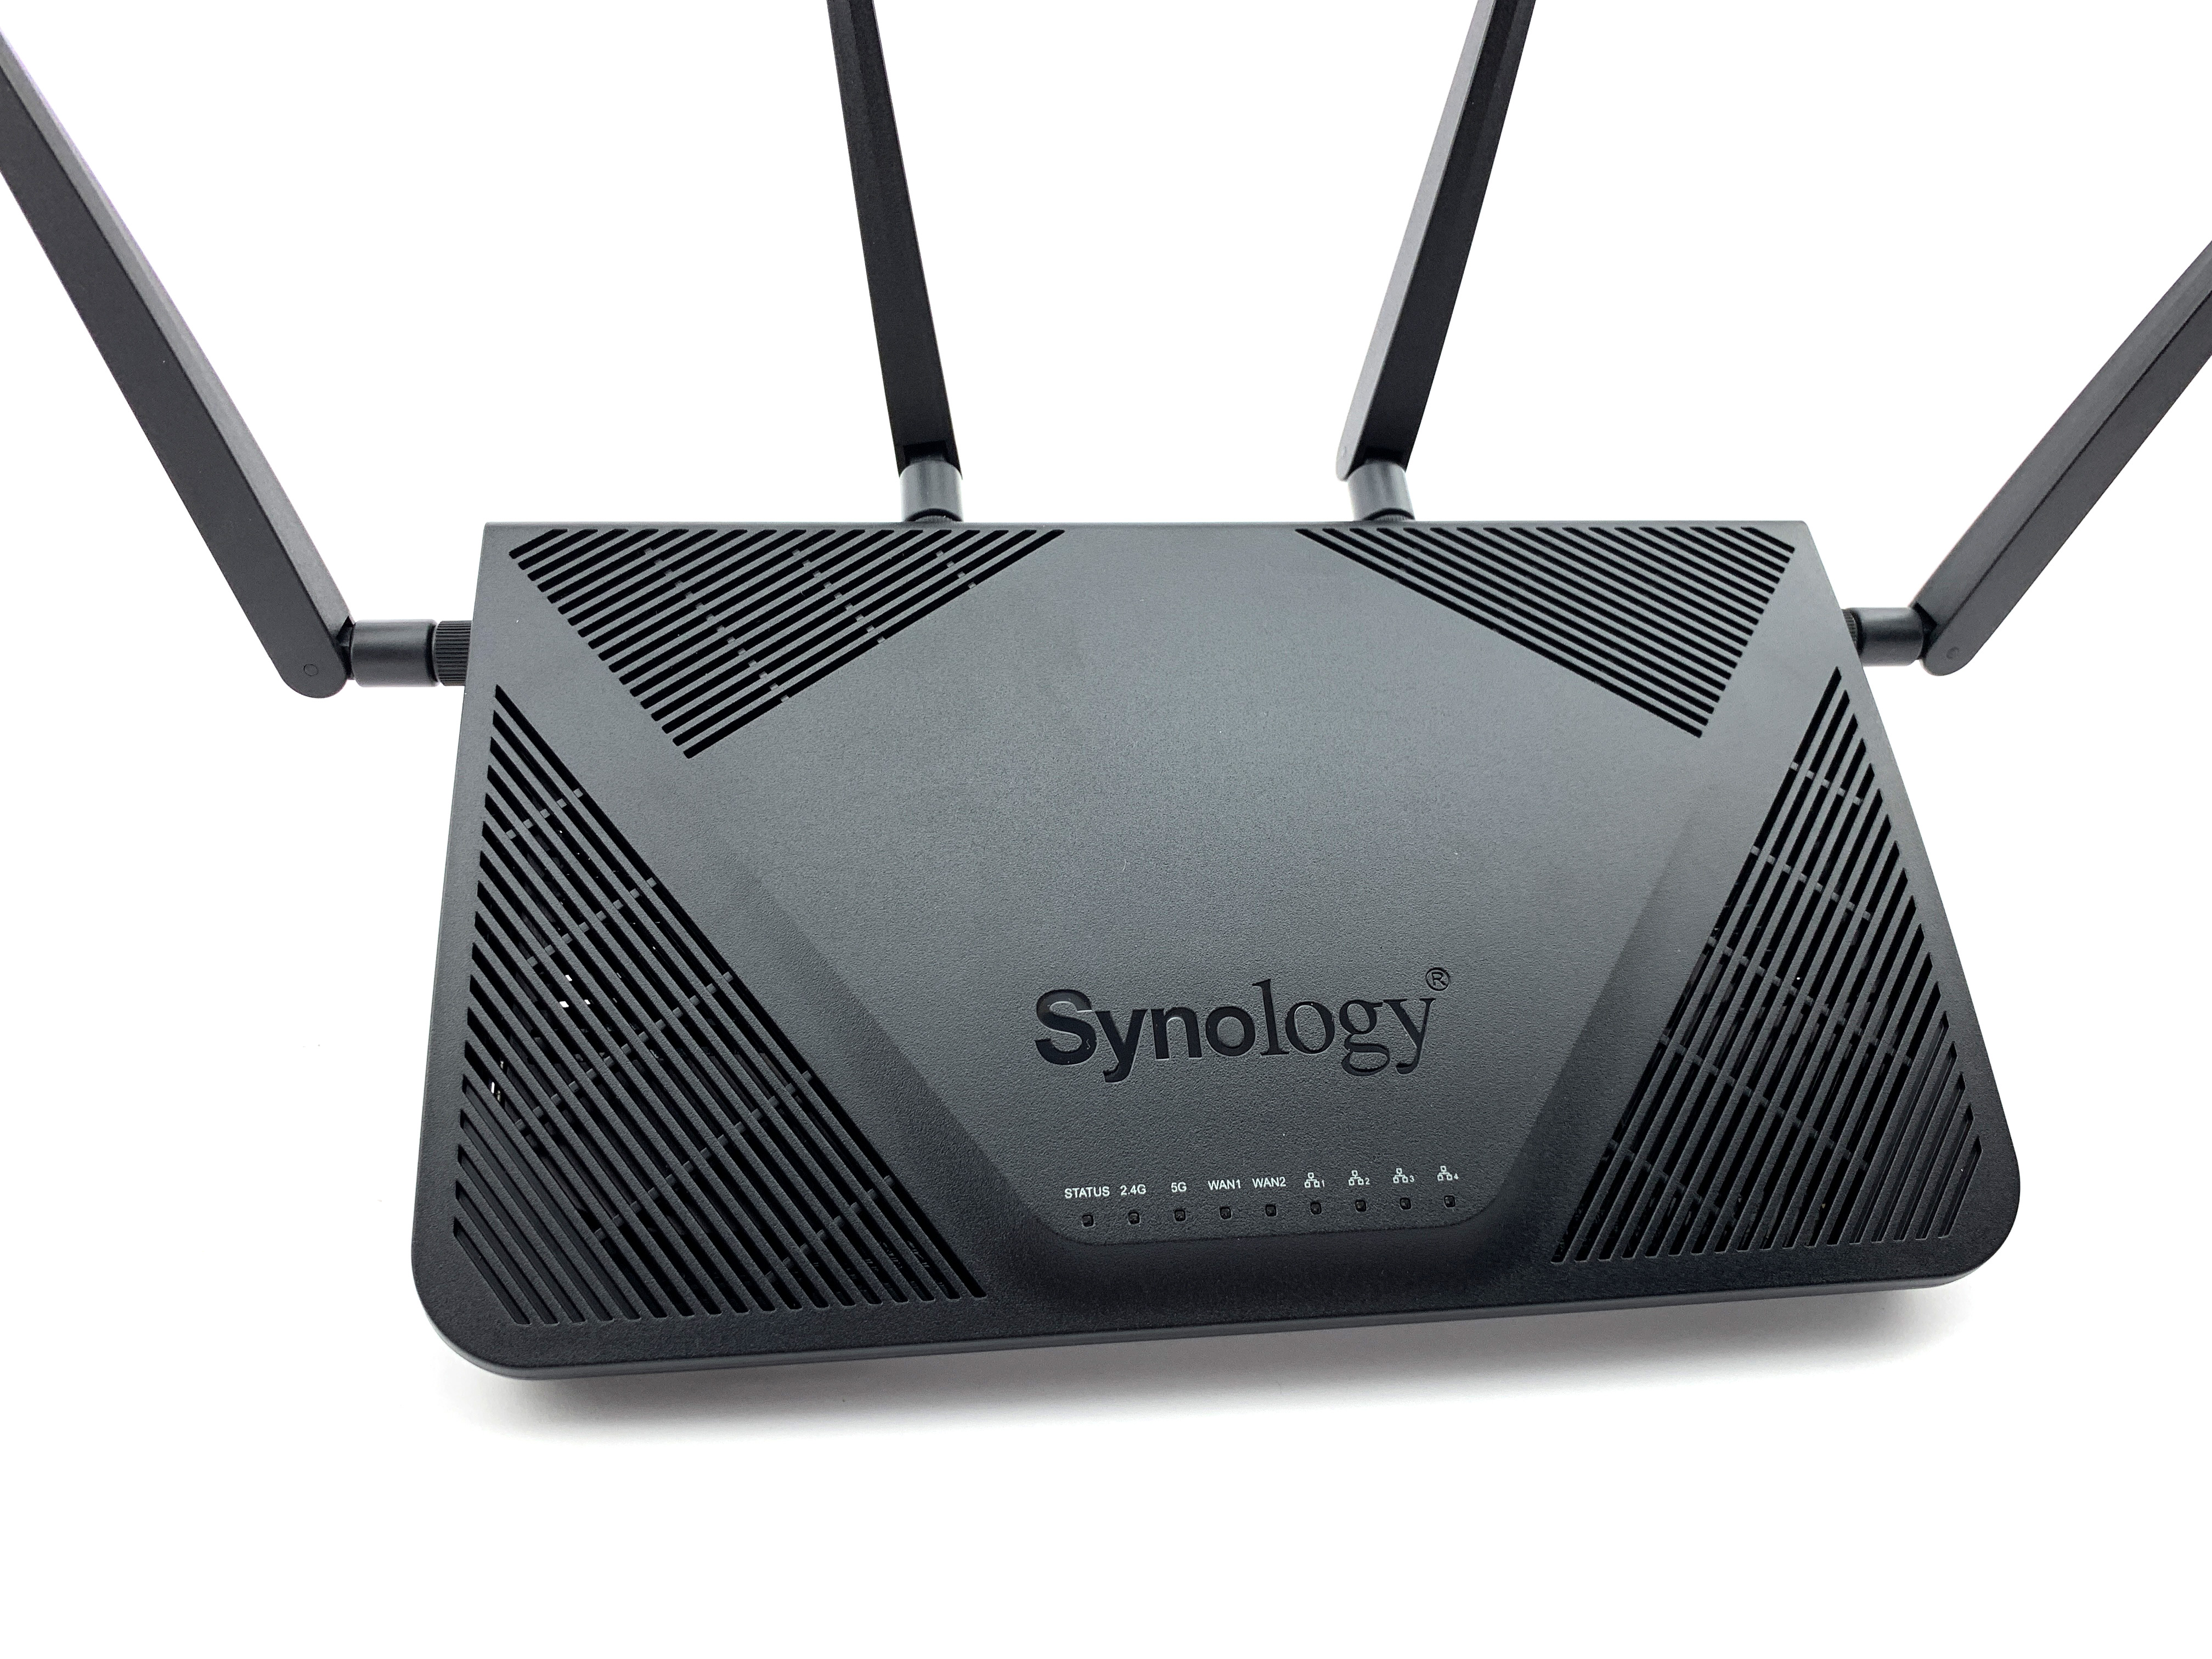 取代Airport的路由器推薦：Synology RT2600ac，還可無線備份 Mac 資料